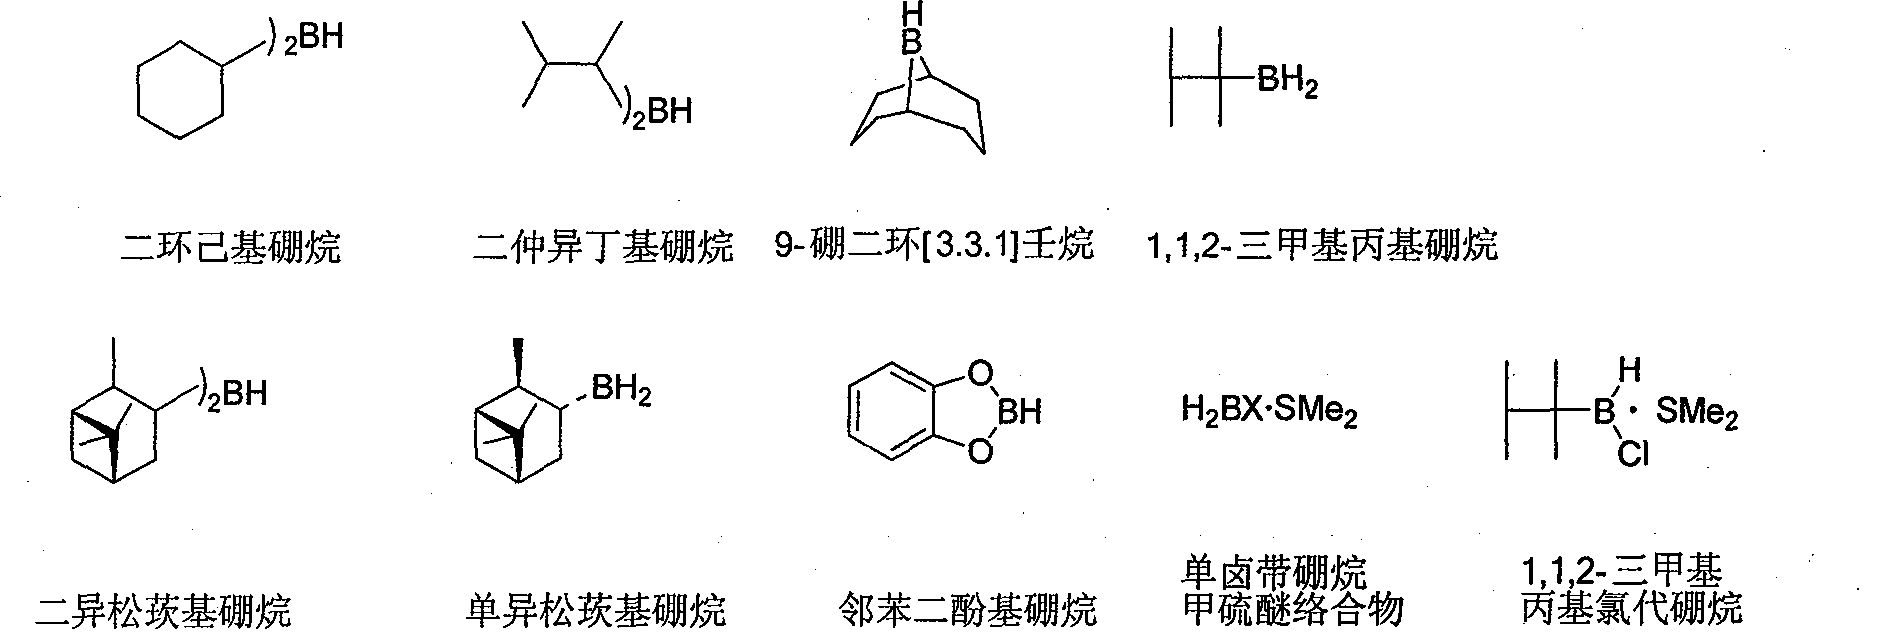 Preparation method of 9-boron bicyclo (3,3,1)-nonane (9-BBN)